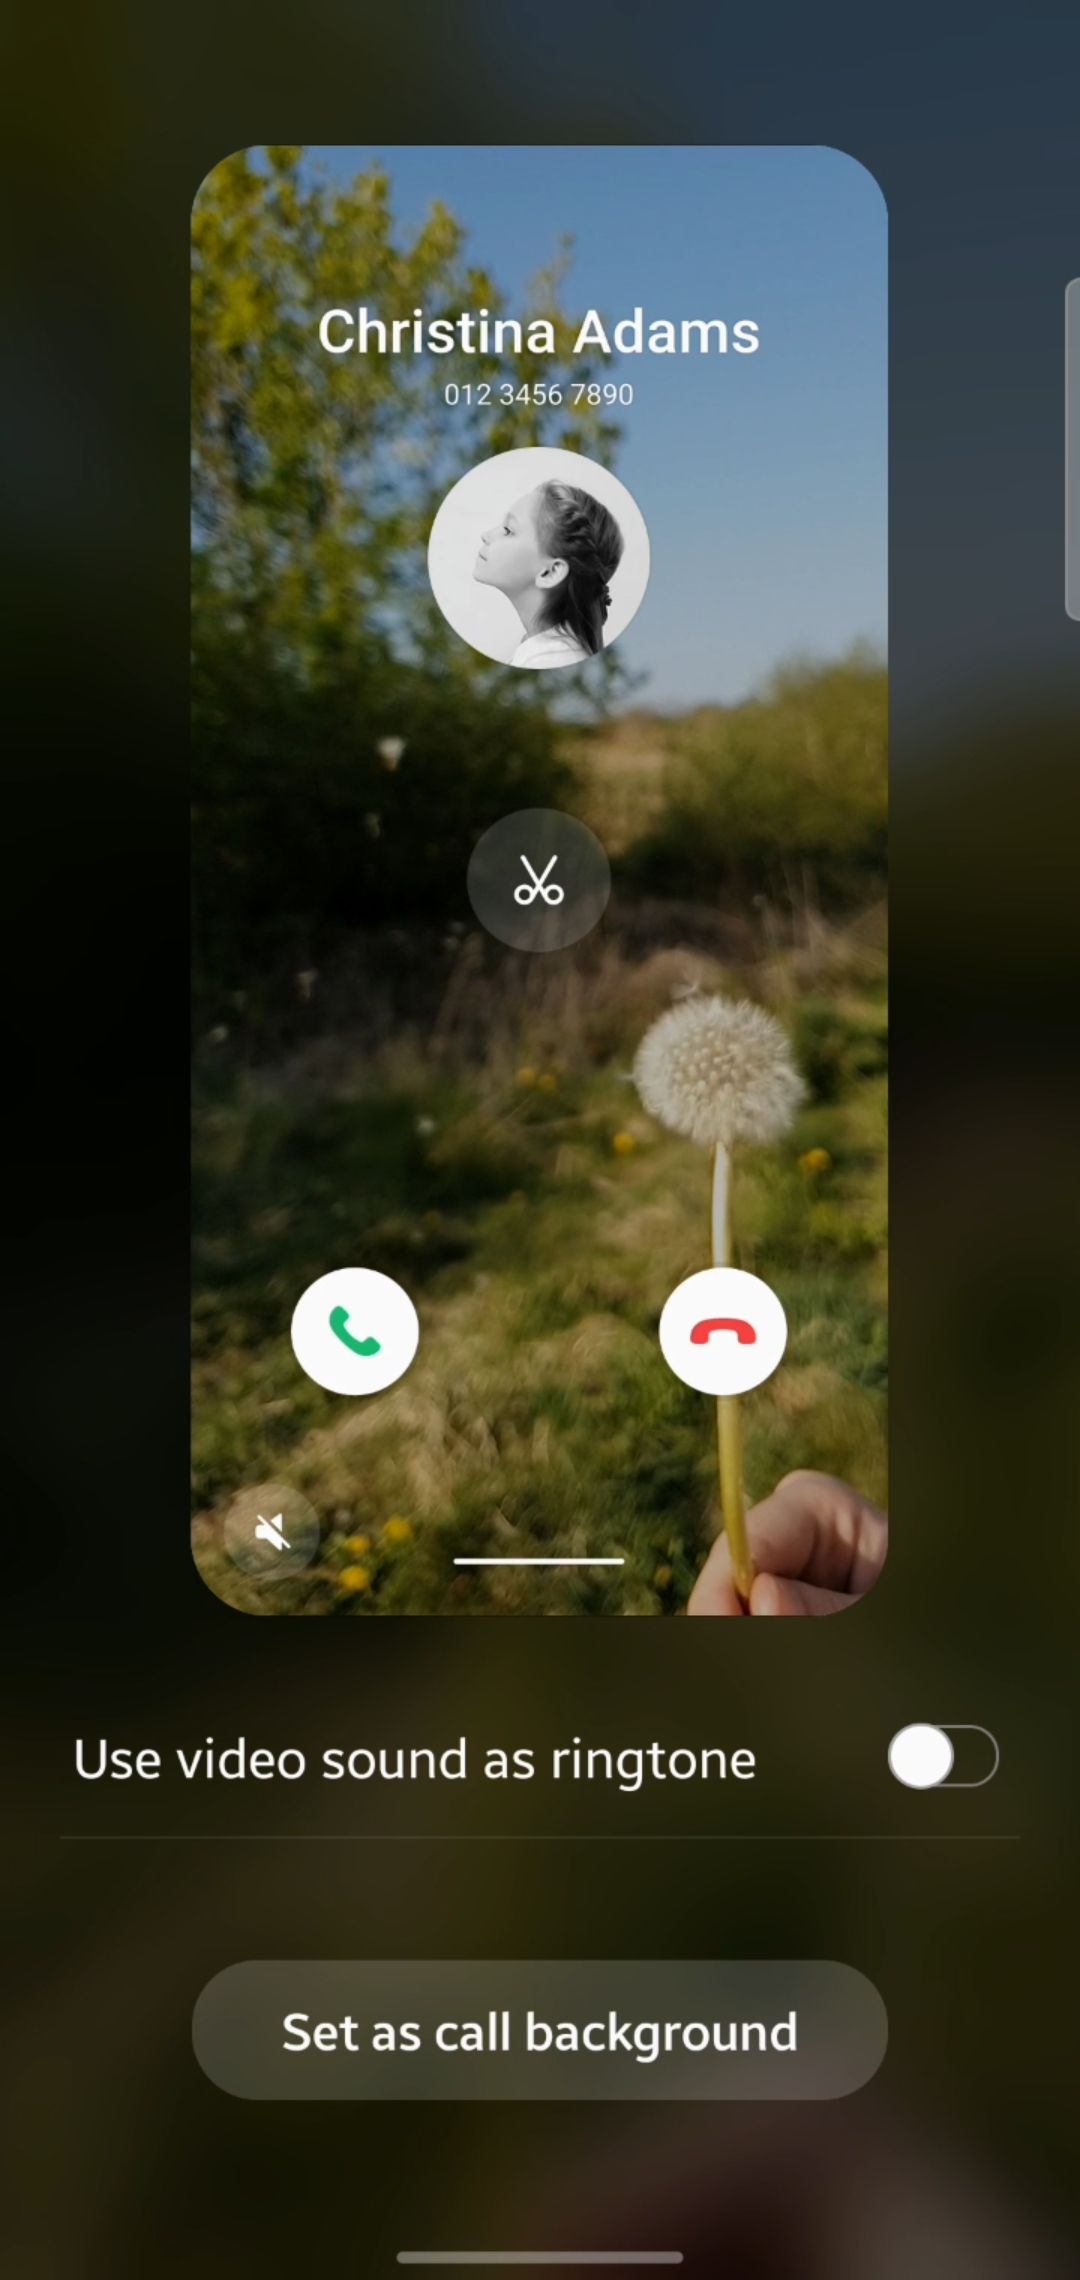 Samsung Community vừa ra mắt tính năng mới hấp dẫn cho video nền cuộc gọi. Đúng như tên gọi, nơi đây sẽ giúp các thành viên cộng đồng Samsung kết nối và chia sẻ những điều thú vị về điện thoại của mình. Hãy cùng khám phá ngay nhé!